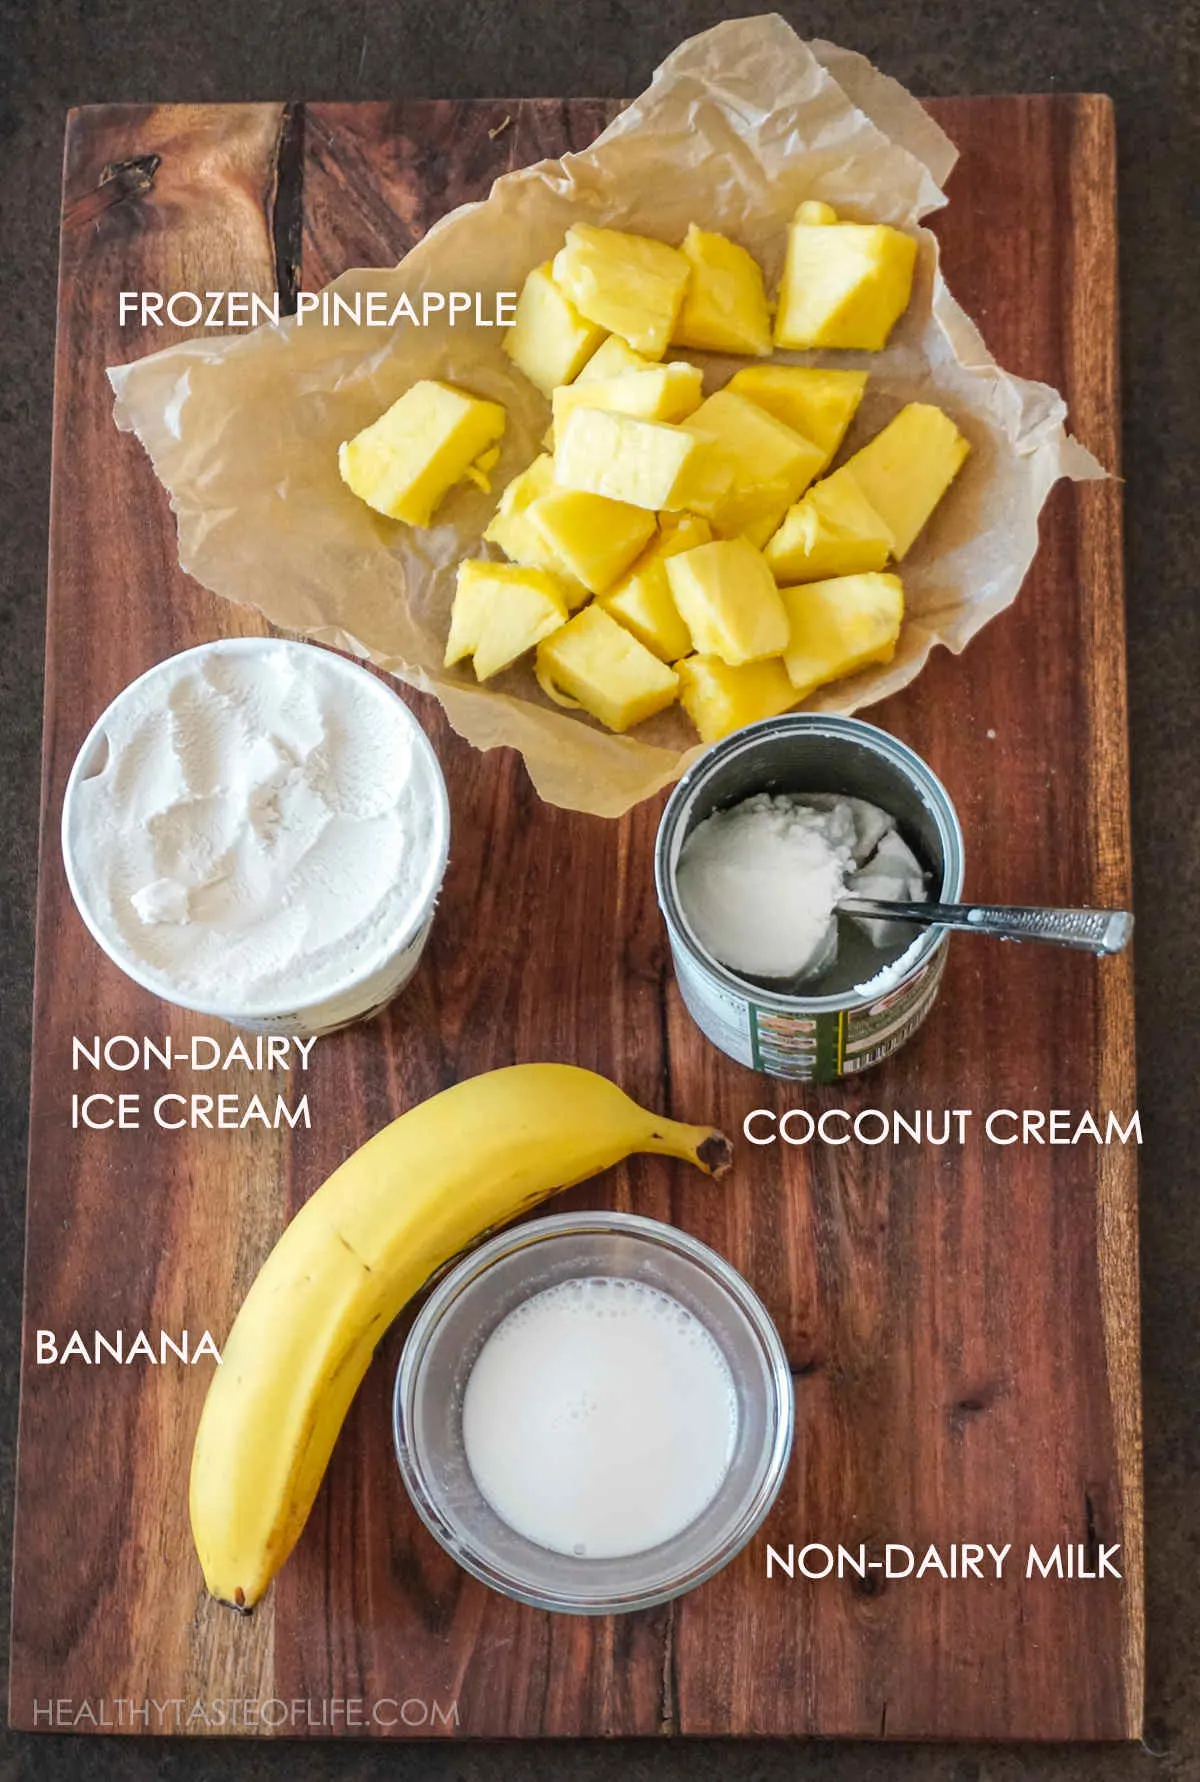 Ingredients for vegan pineapple milkshake displayed on a board.